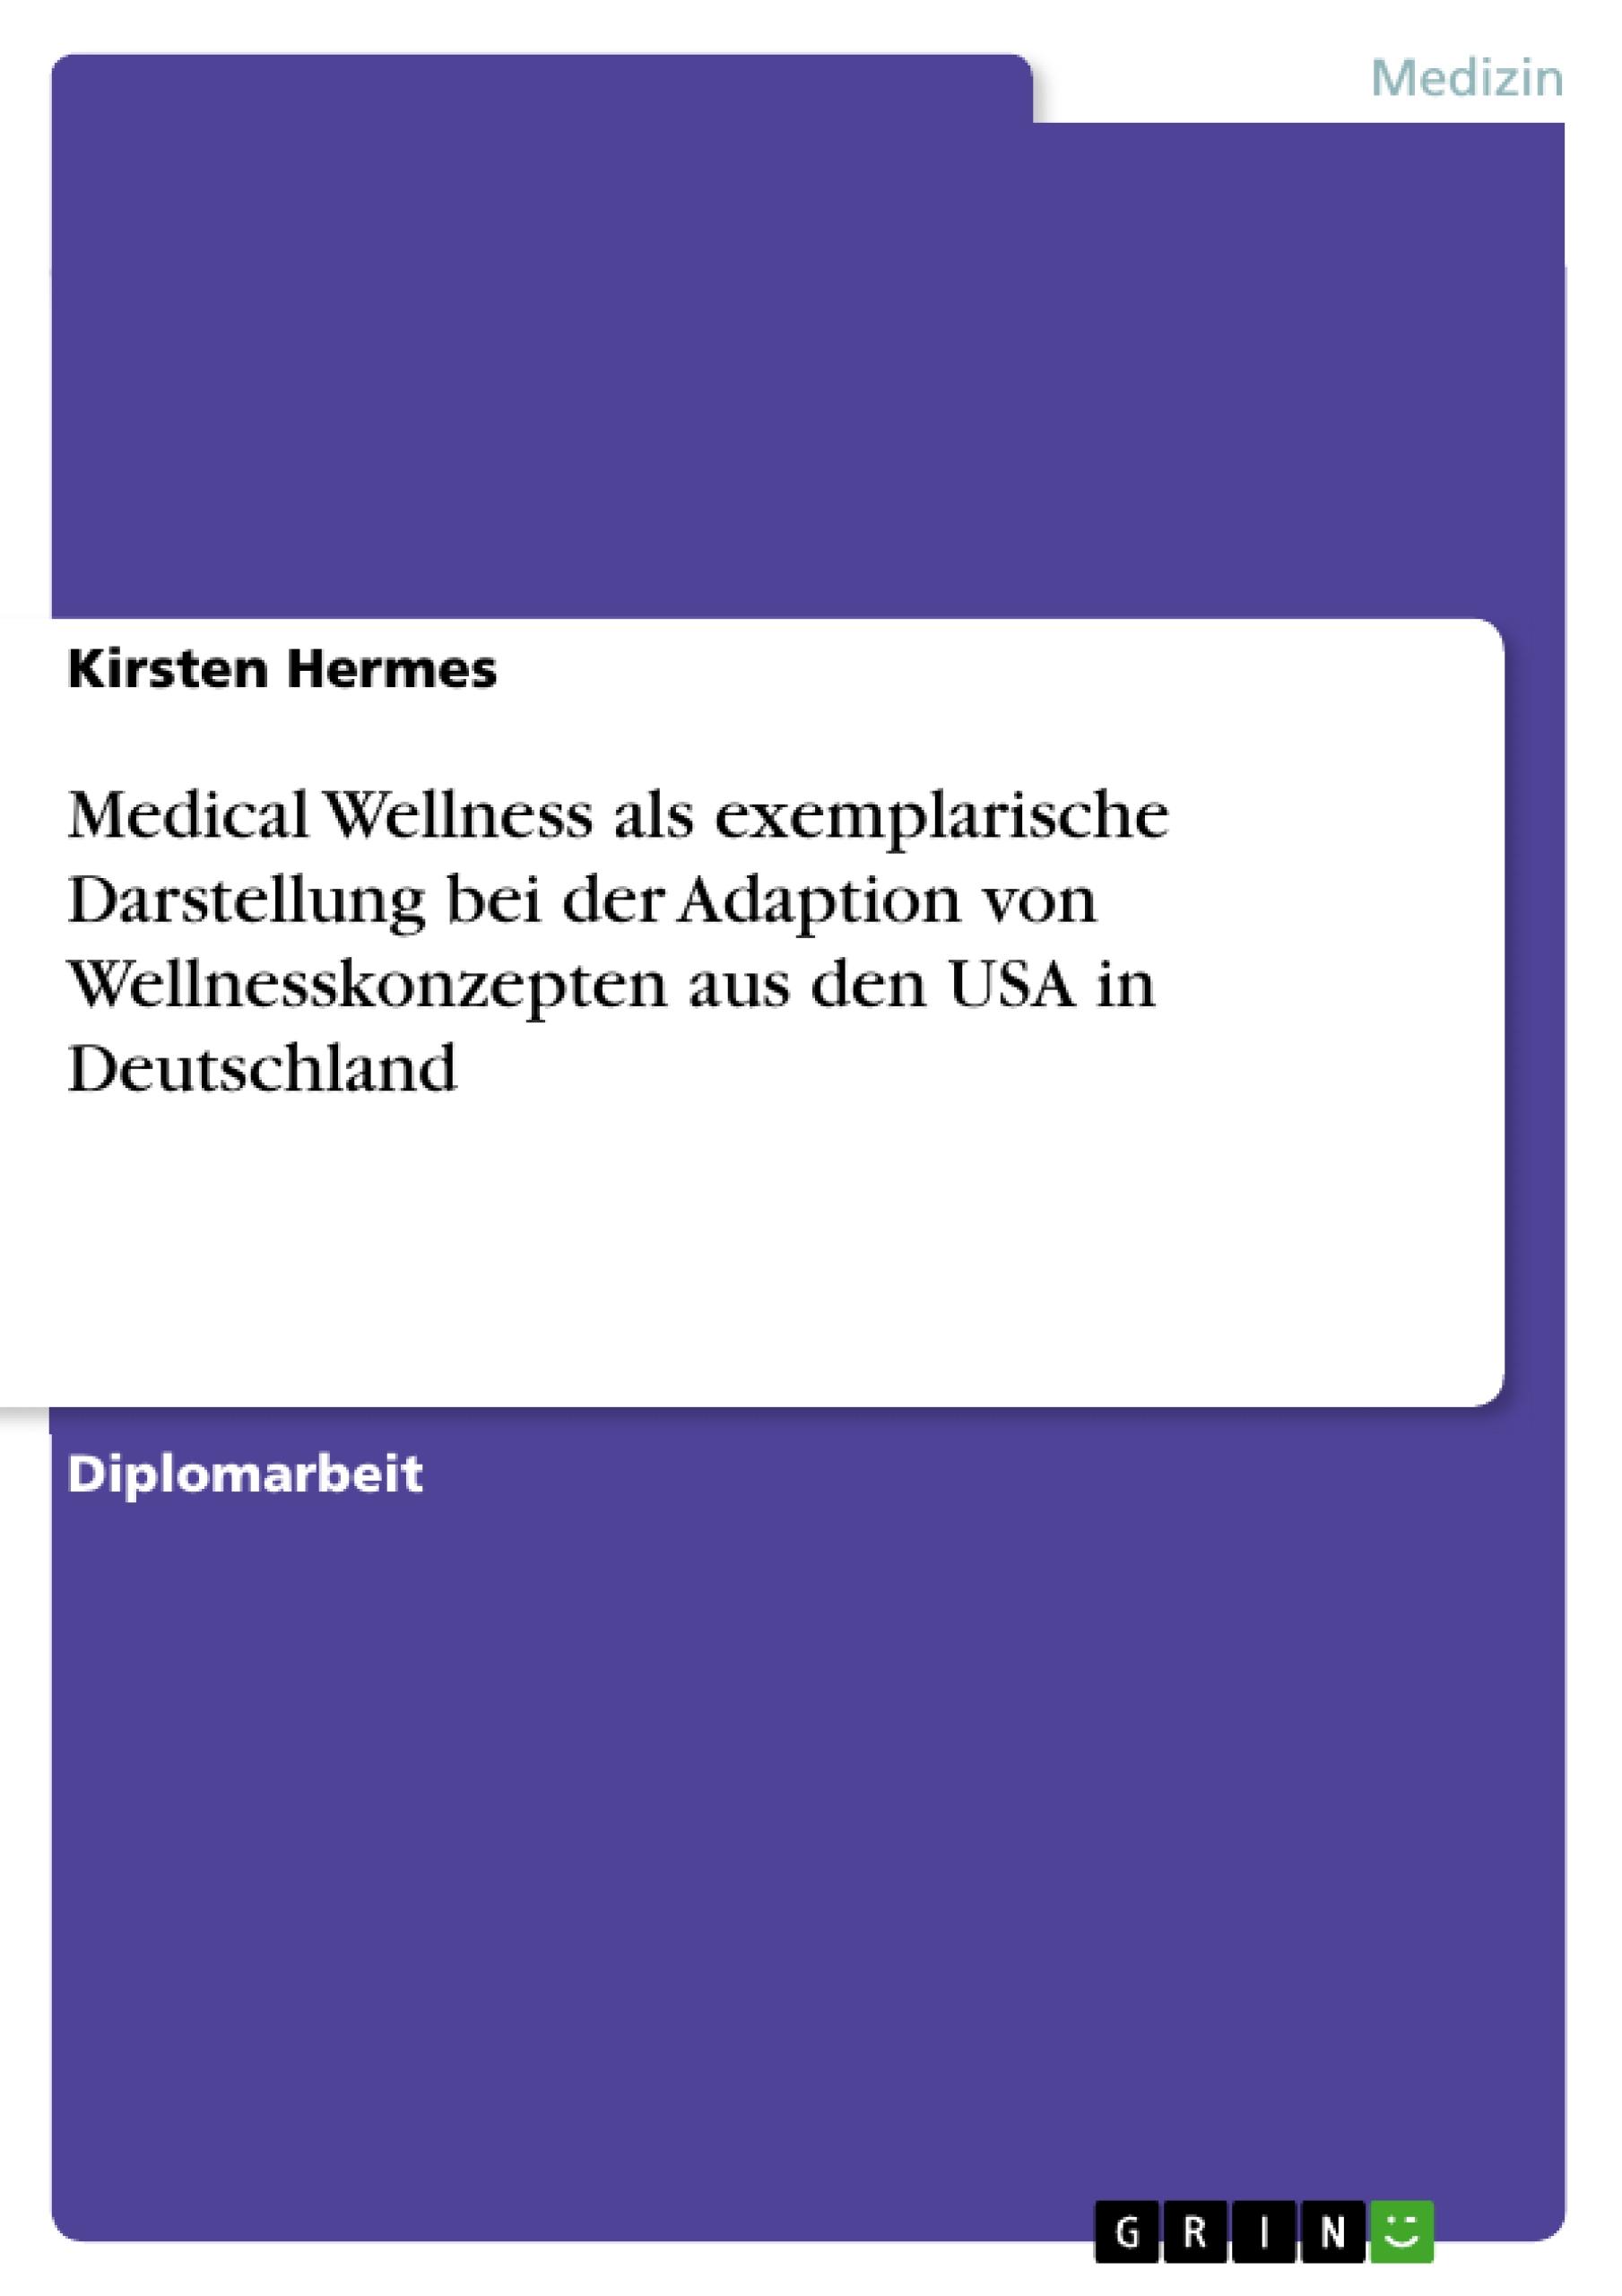 Medical Wellness als exemplarische Darstellung bei der Adaption von Wellnesskonzepten aus den USA in Deutschland - Hermes, Kirsten